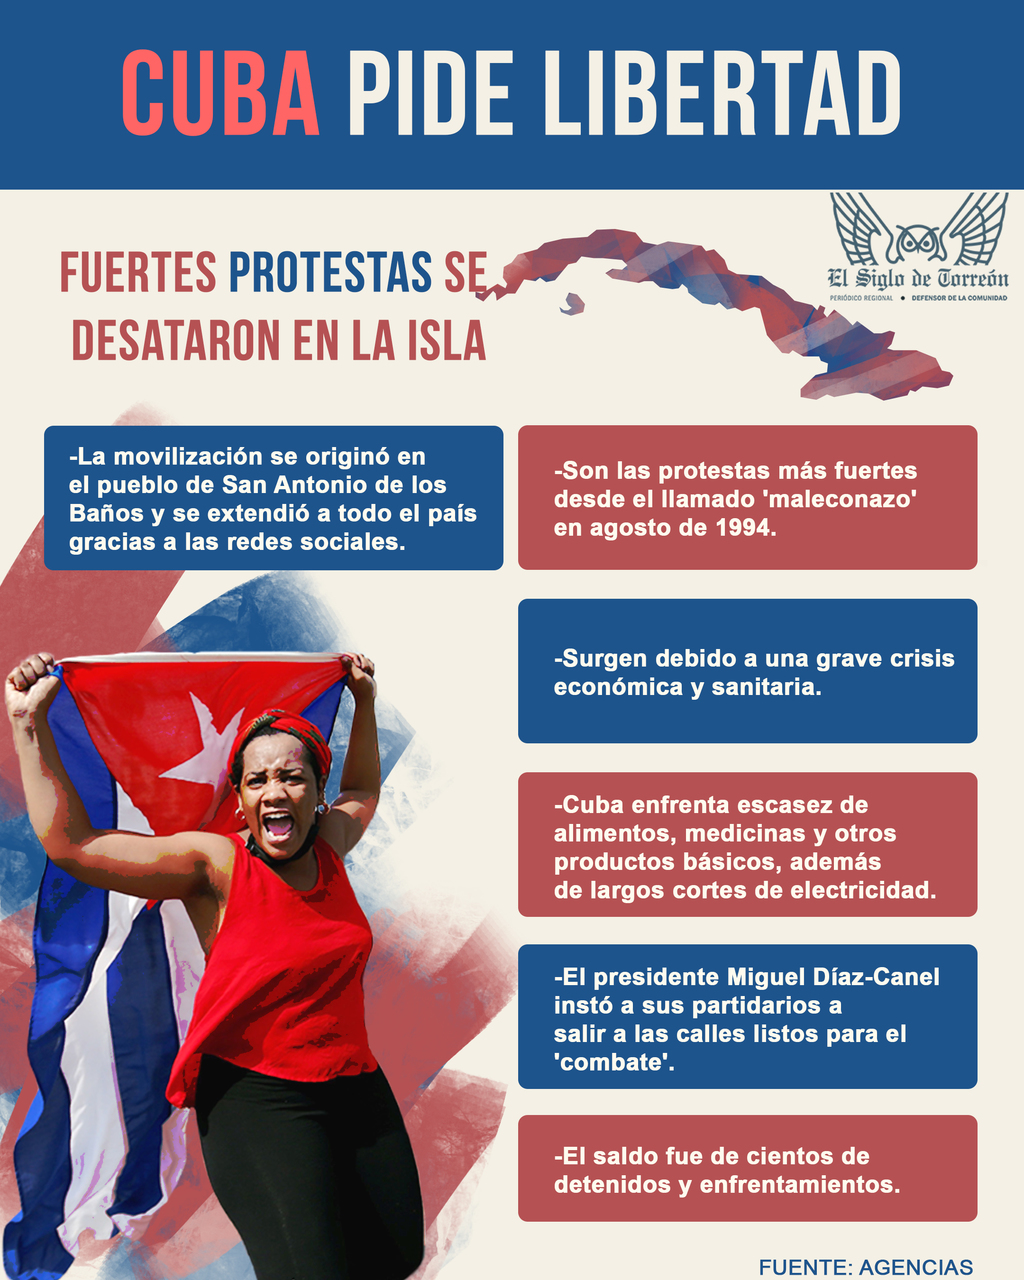 Cuba vive tensa calma tras protestas